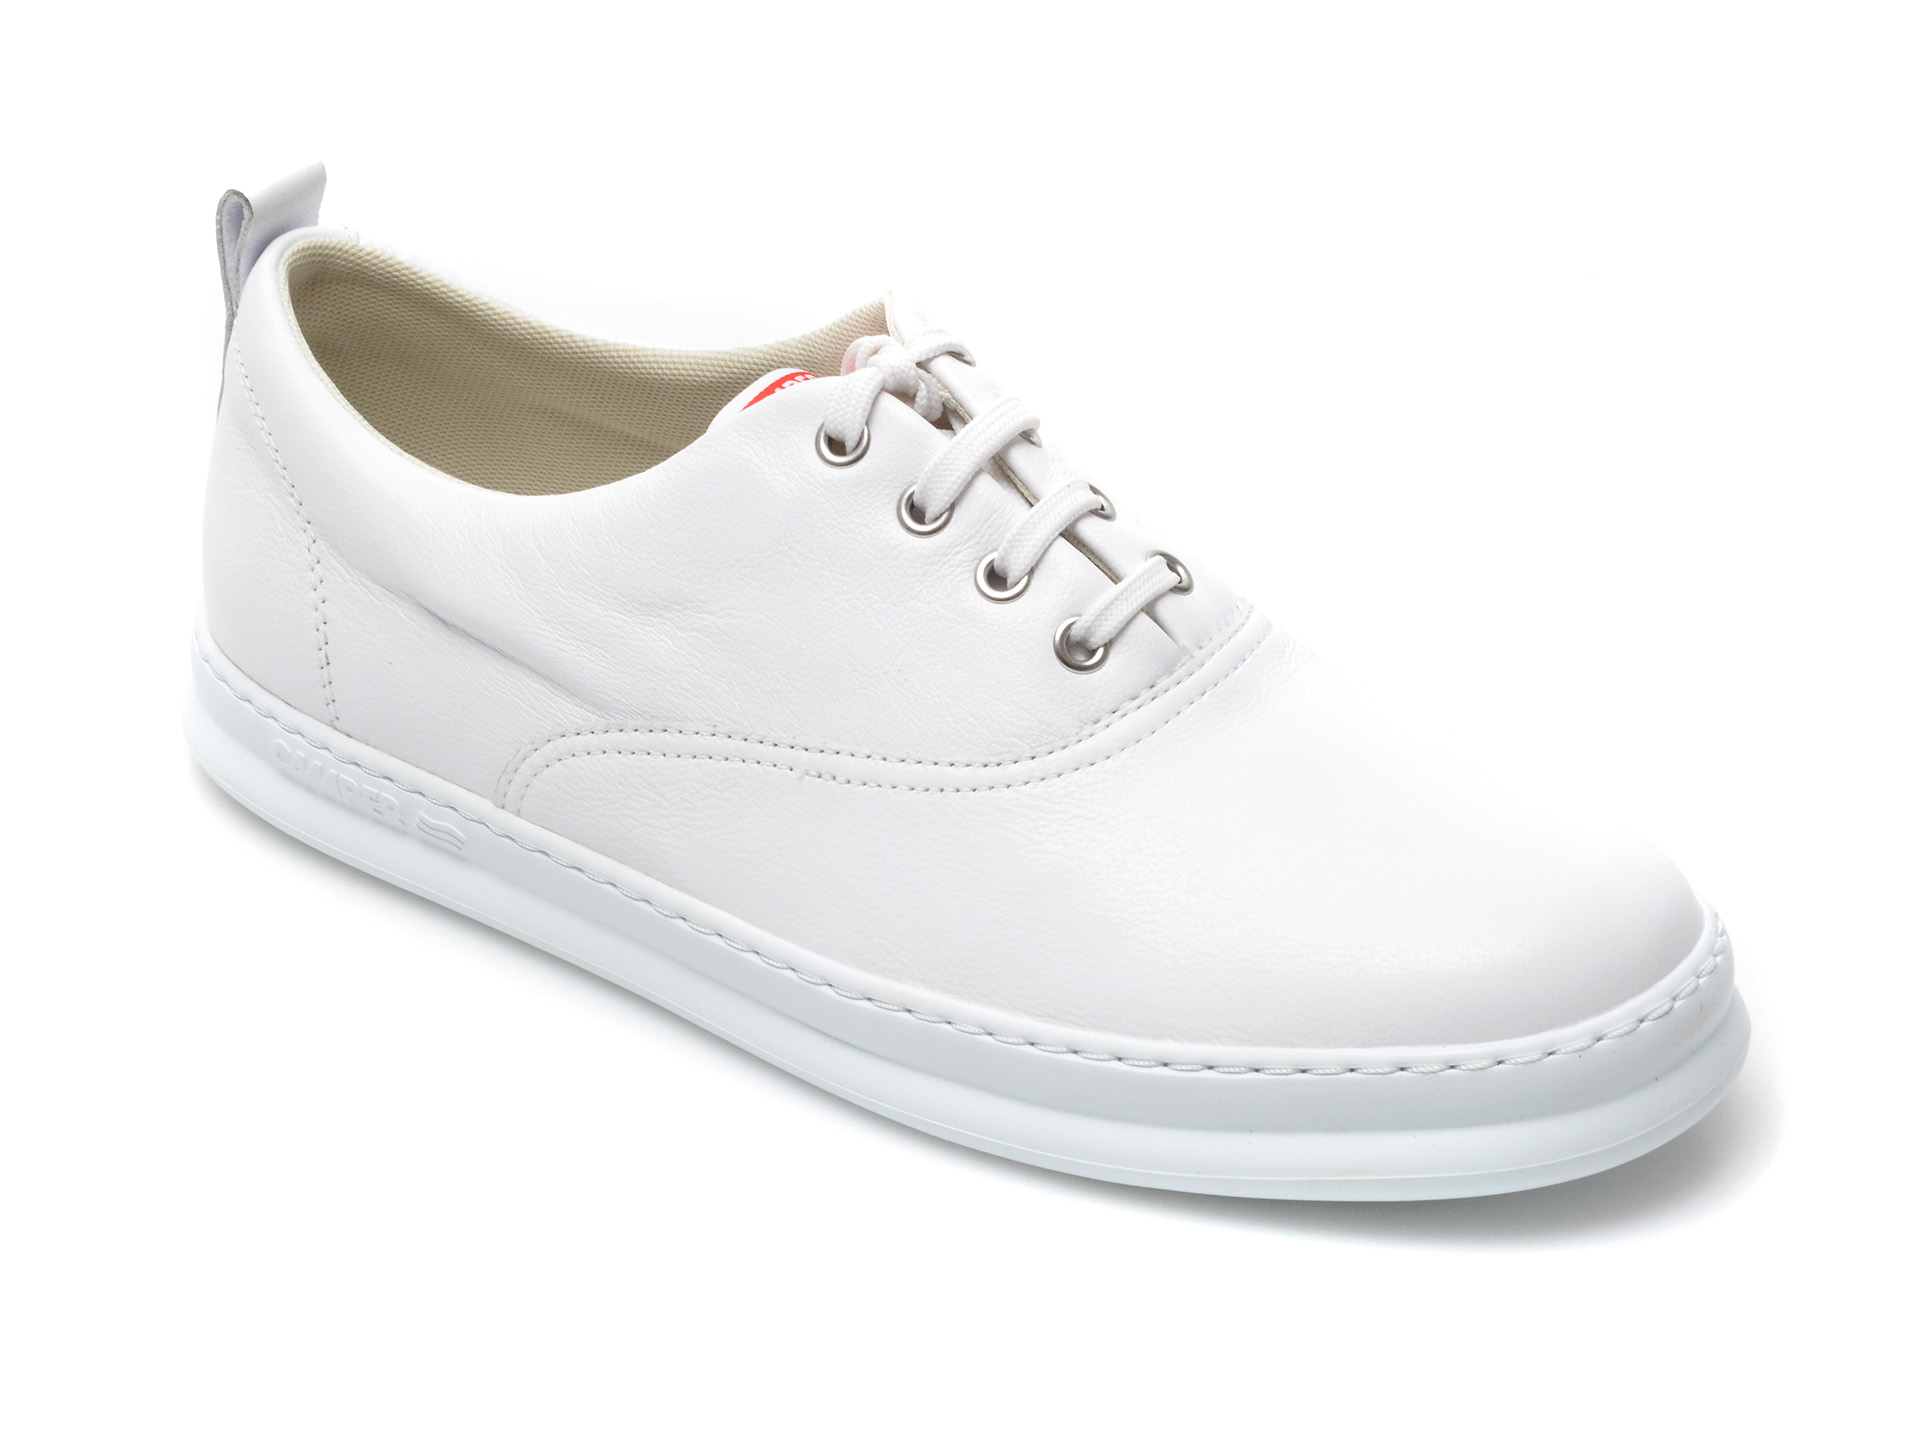 Pantofi CAMPER albi, K100803, din piele naturala Camper